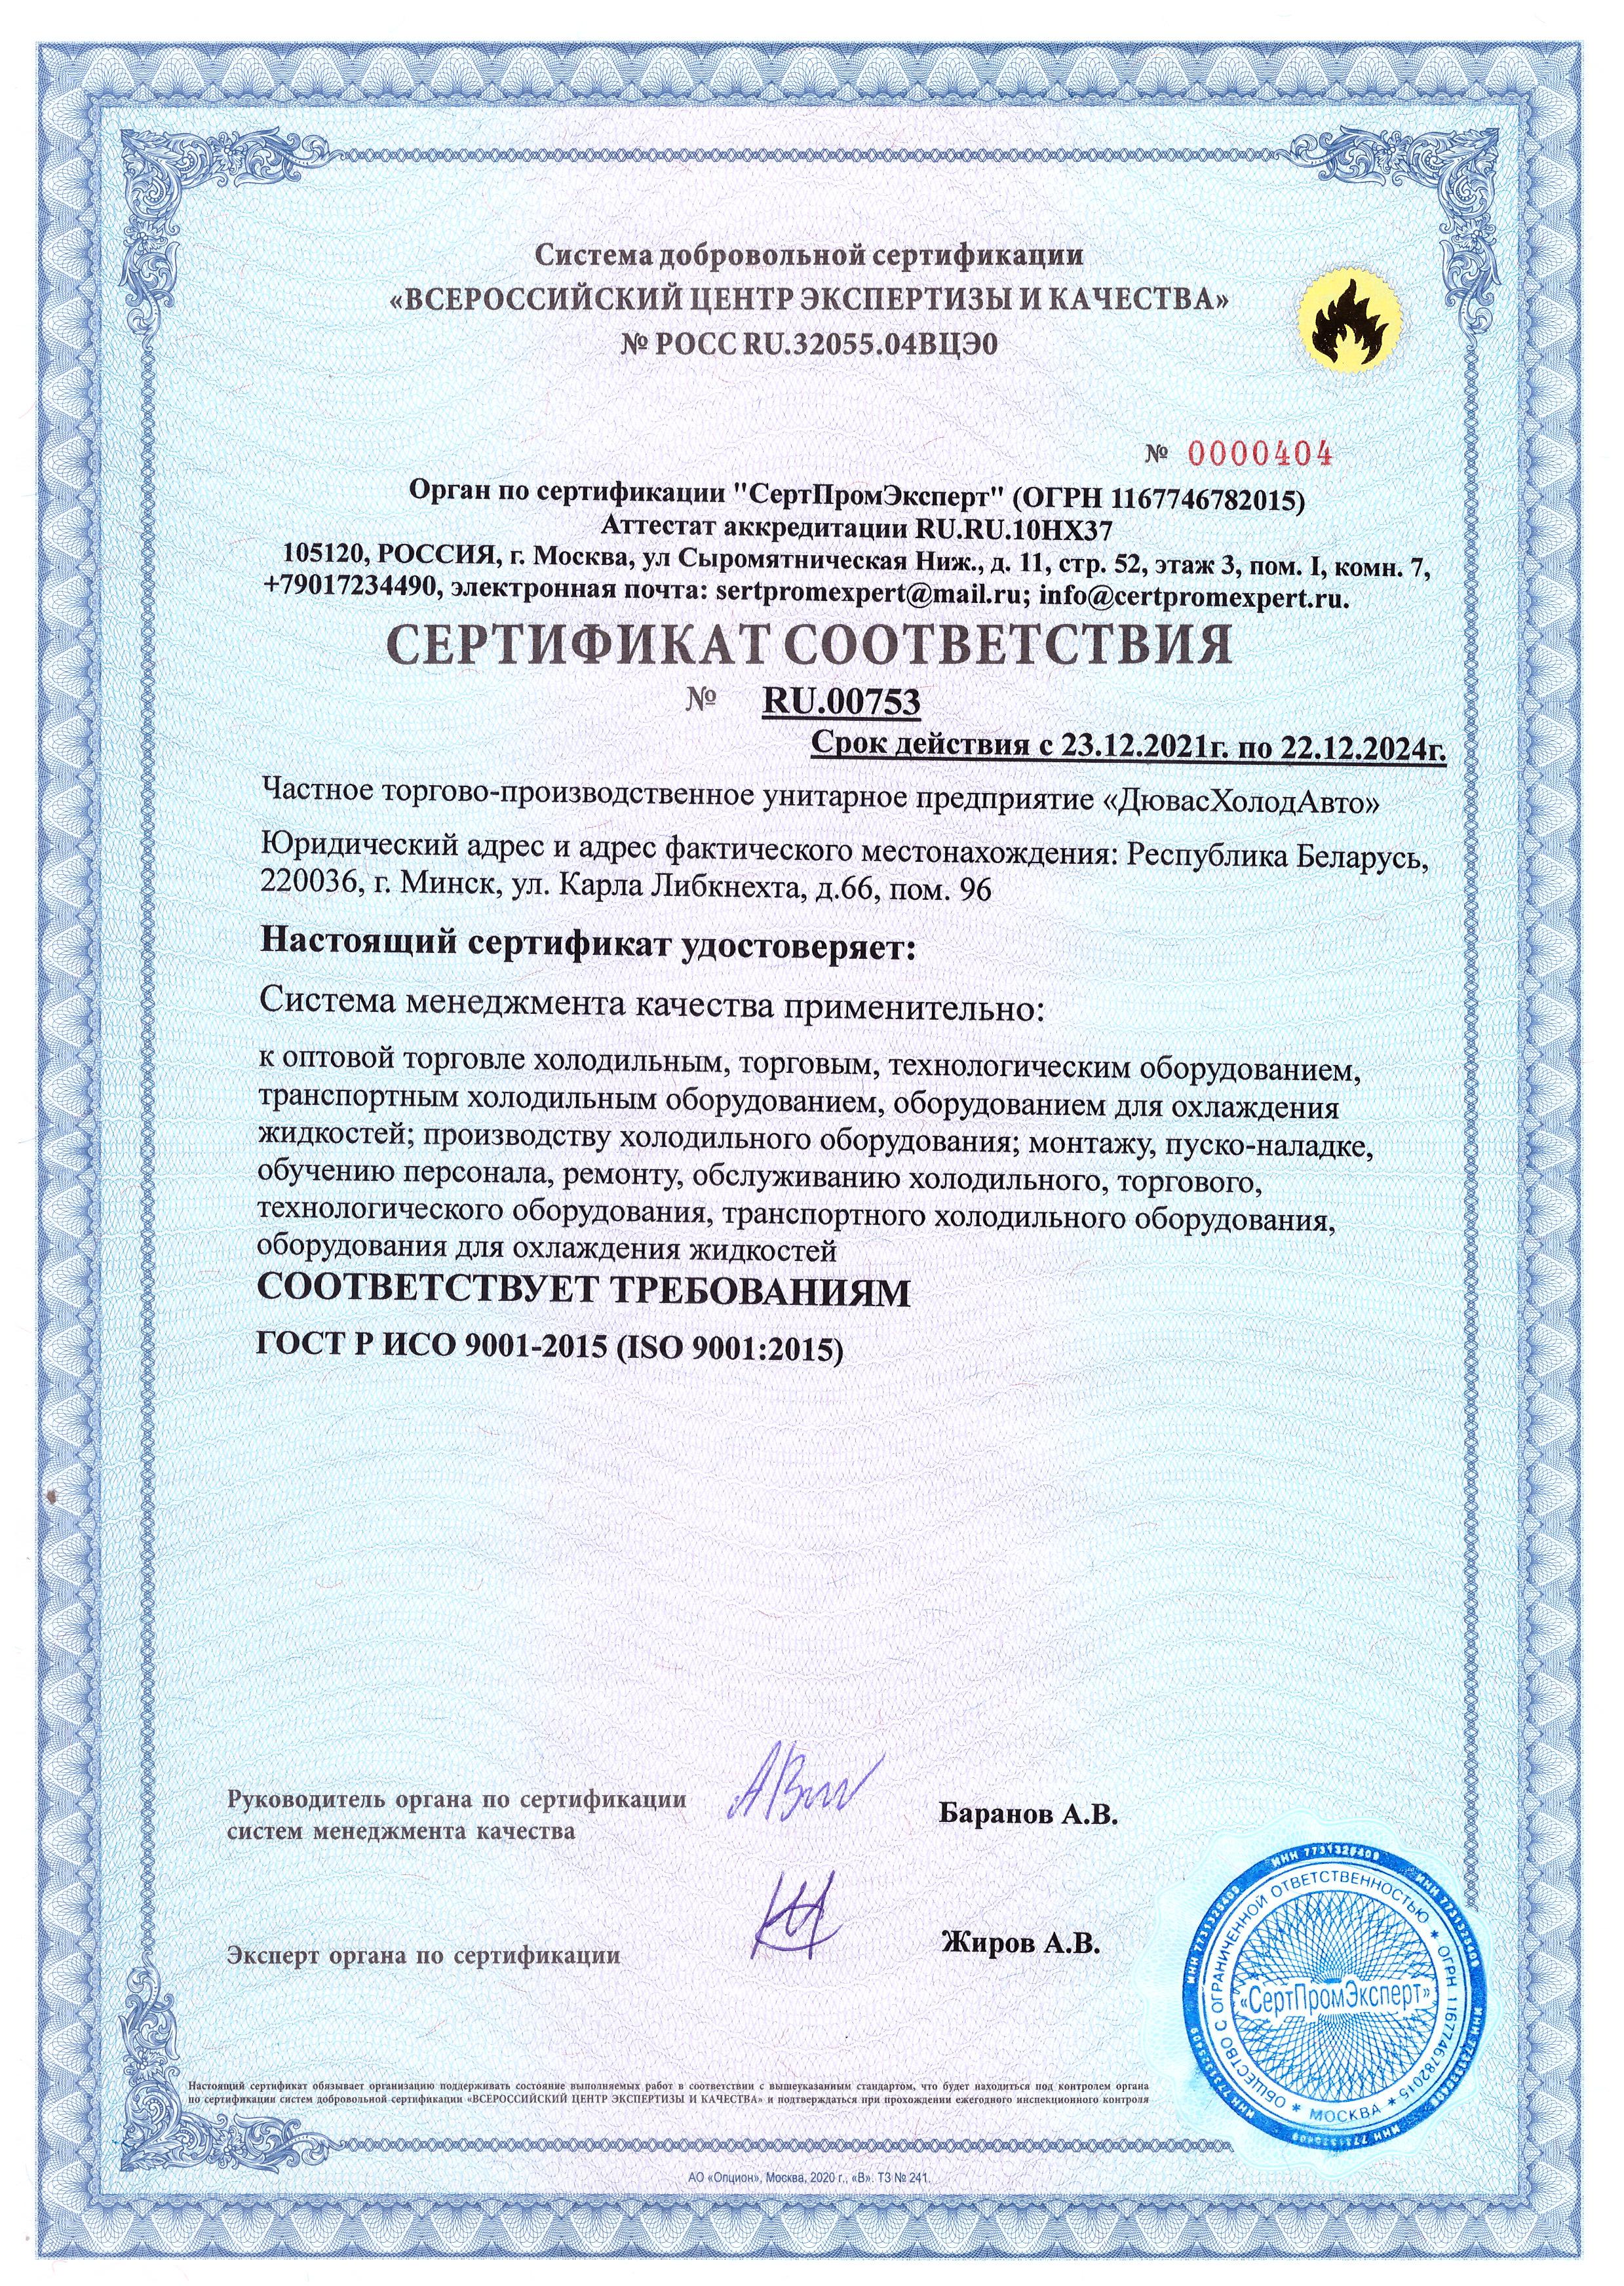 Сертификат соответствия холодильного оборудования